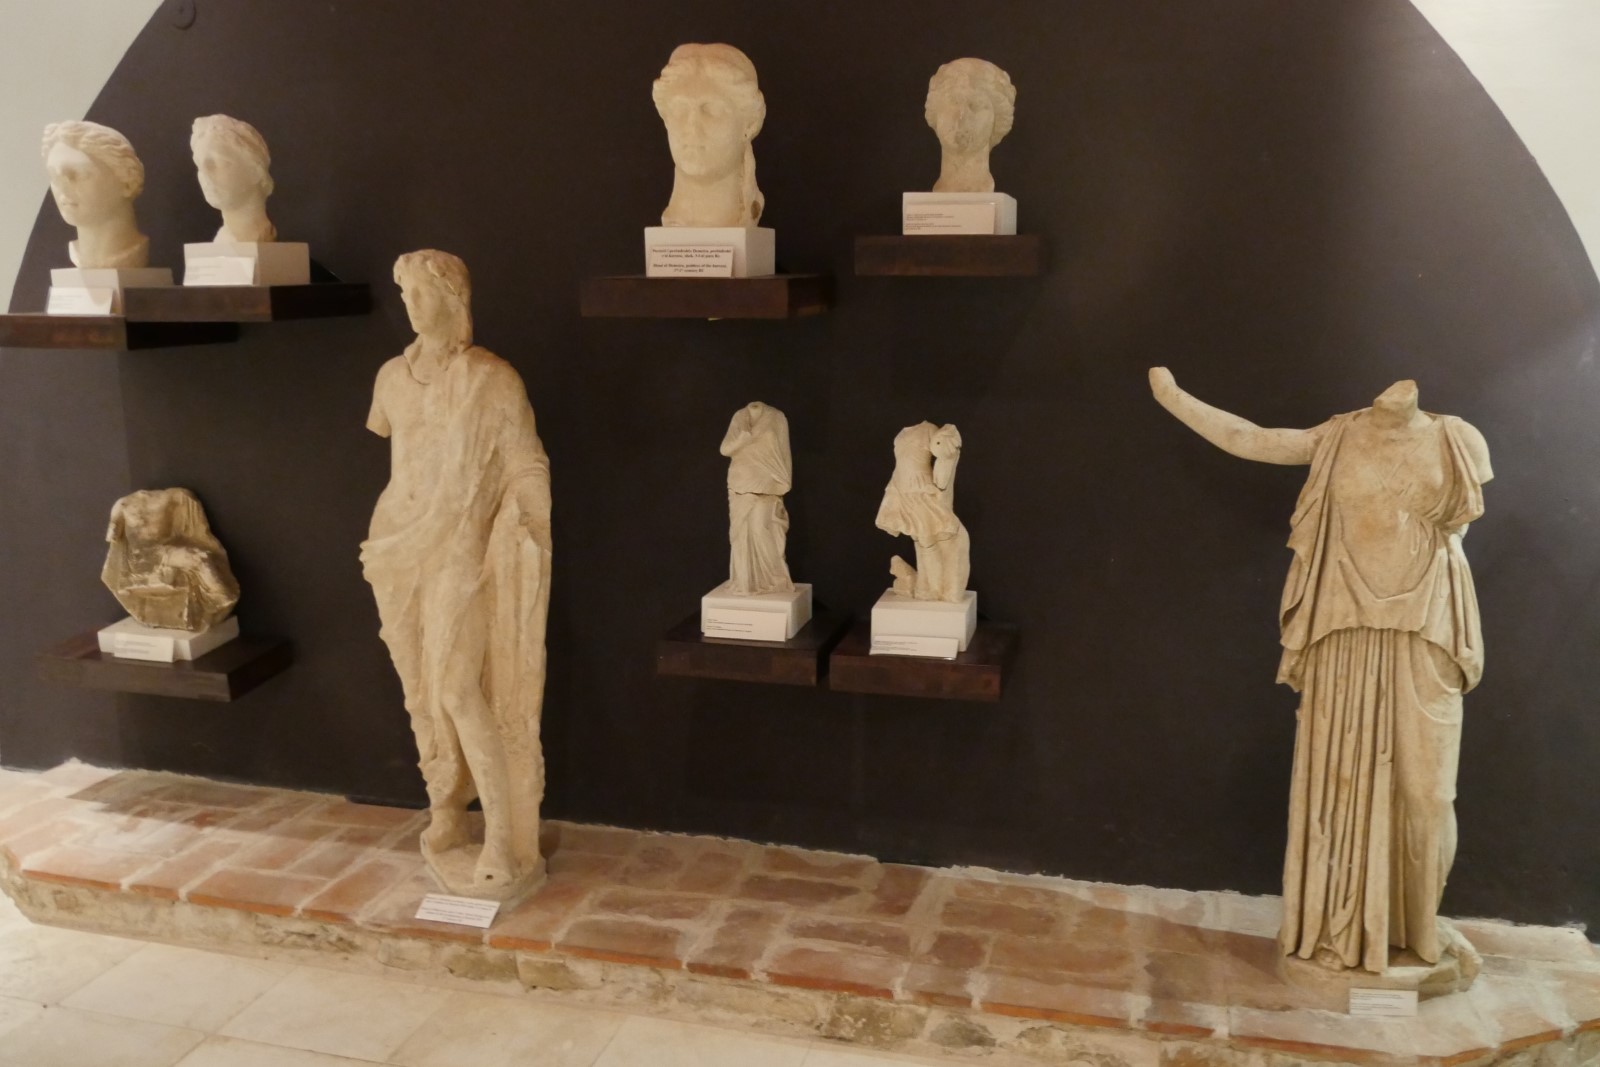 Muzeu Arkeologjik i Butrintit ndodhet brenda kalasë së Akropolit të qytetit antik të Butrintit dhe u hap në vitin 1950.